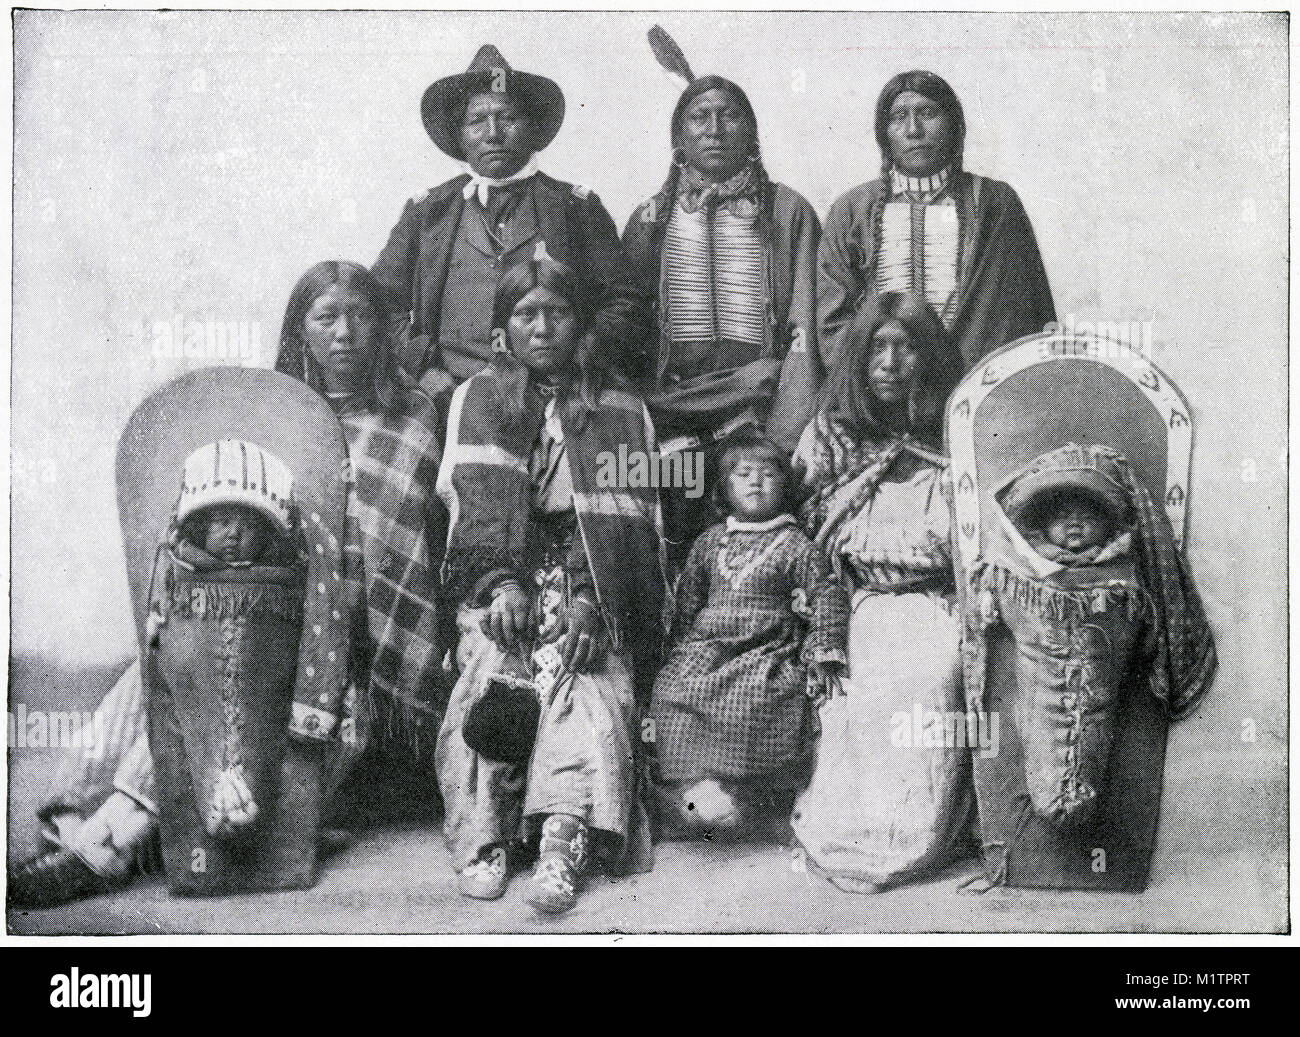 Halbton Abbildung einer North American Indian Chief und seine Familie, Stamm unbekannt, ca. 1900. Von einem ursprünglichen Bild, wie andere Menschen leben von H. Clive Barnard, 1918. Stockfoto